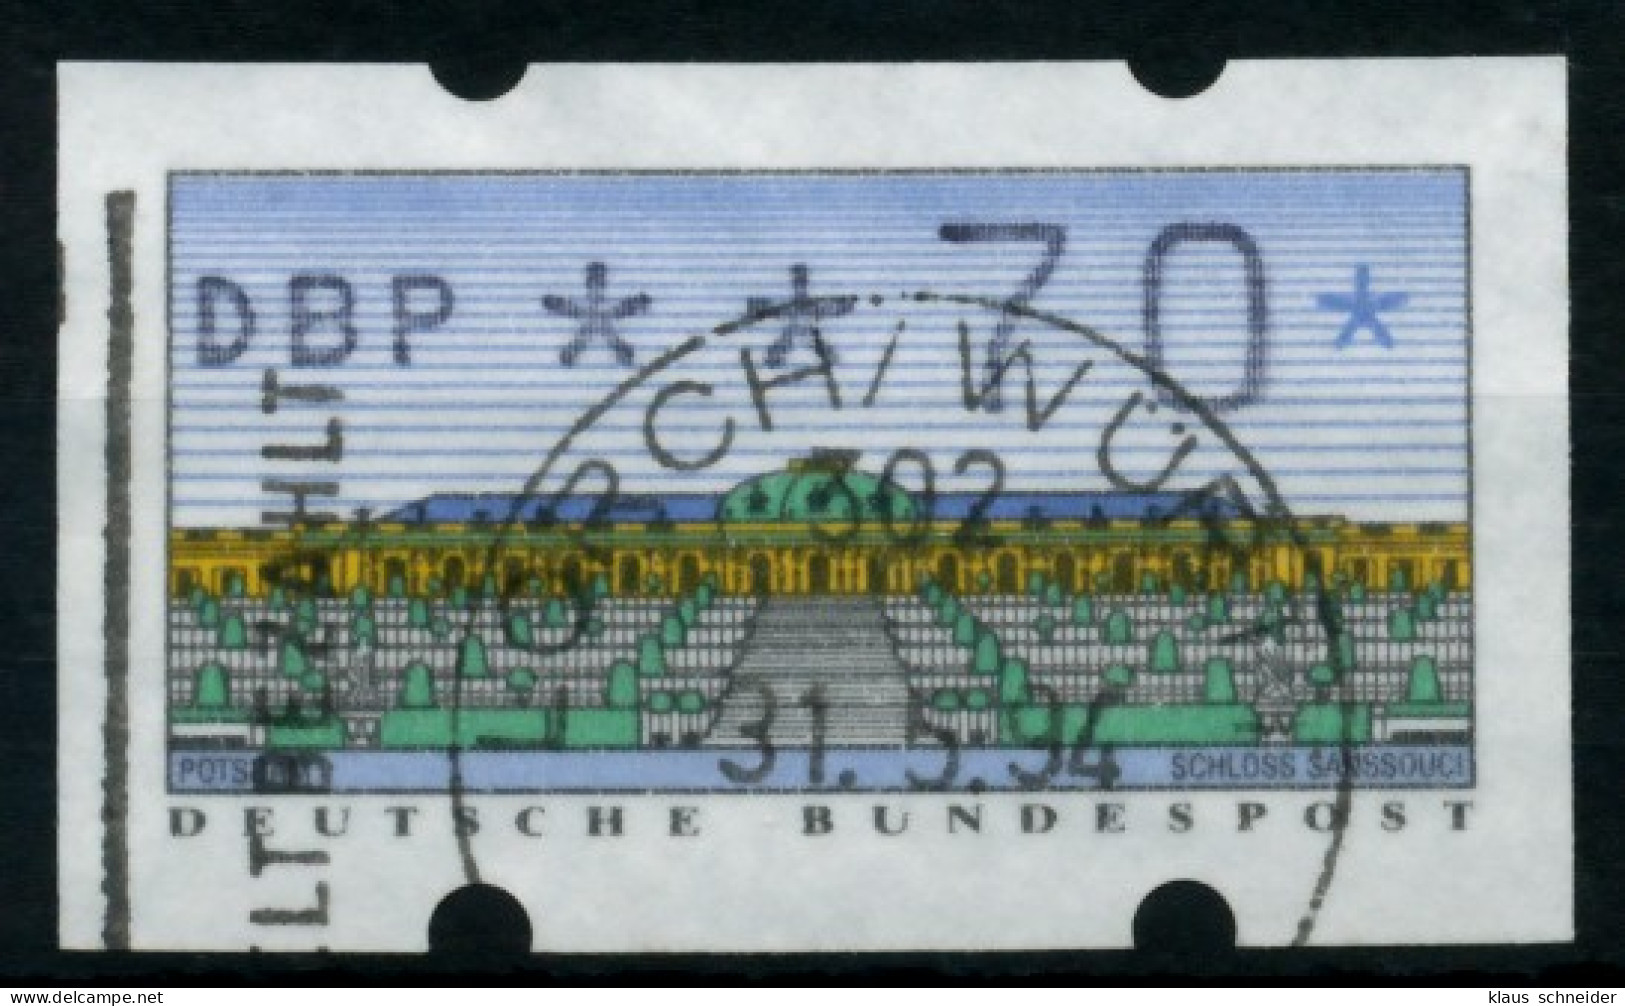 BRD ATM 1993 Nr 2-1.1-0070 Gestempelt X75BFE6 - Automatenmarken [ATM]